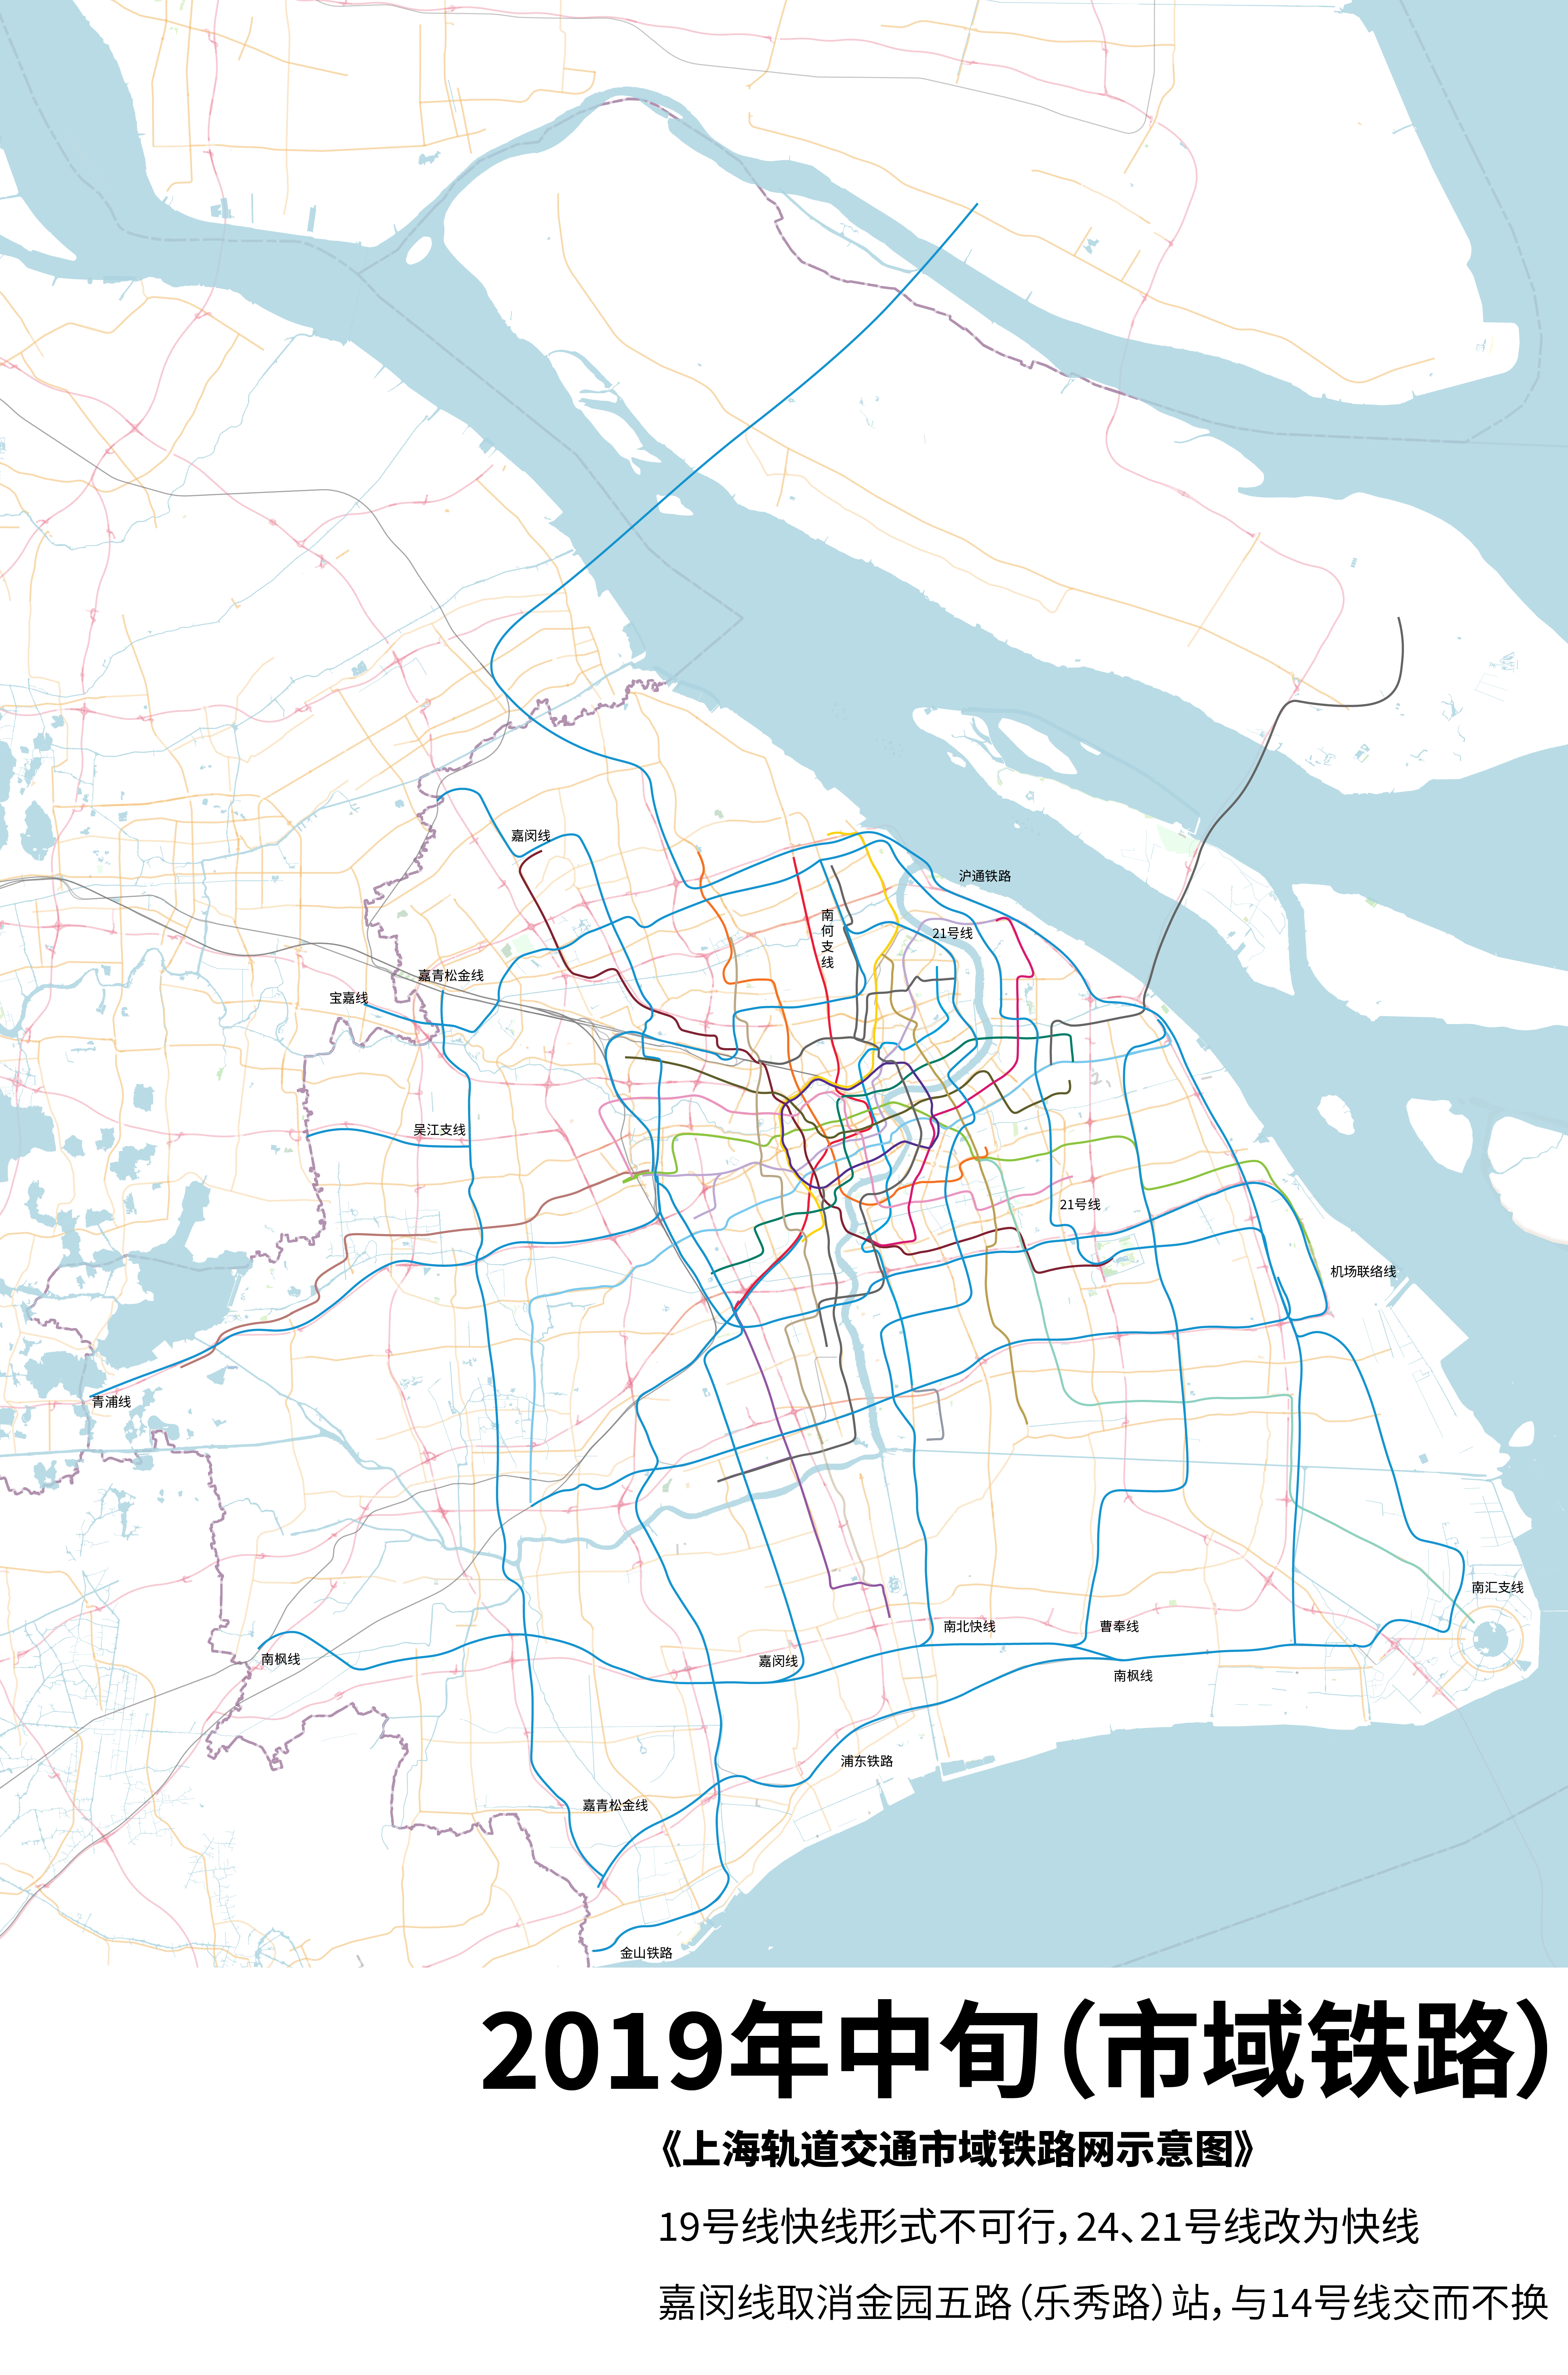 区域一体化背景下的上海市域铁路线网